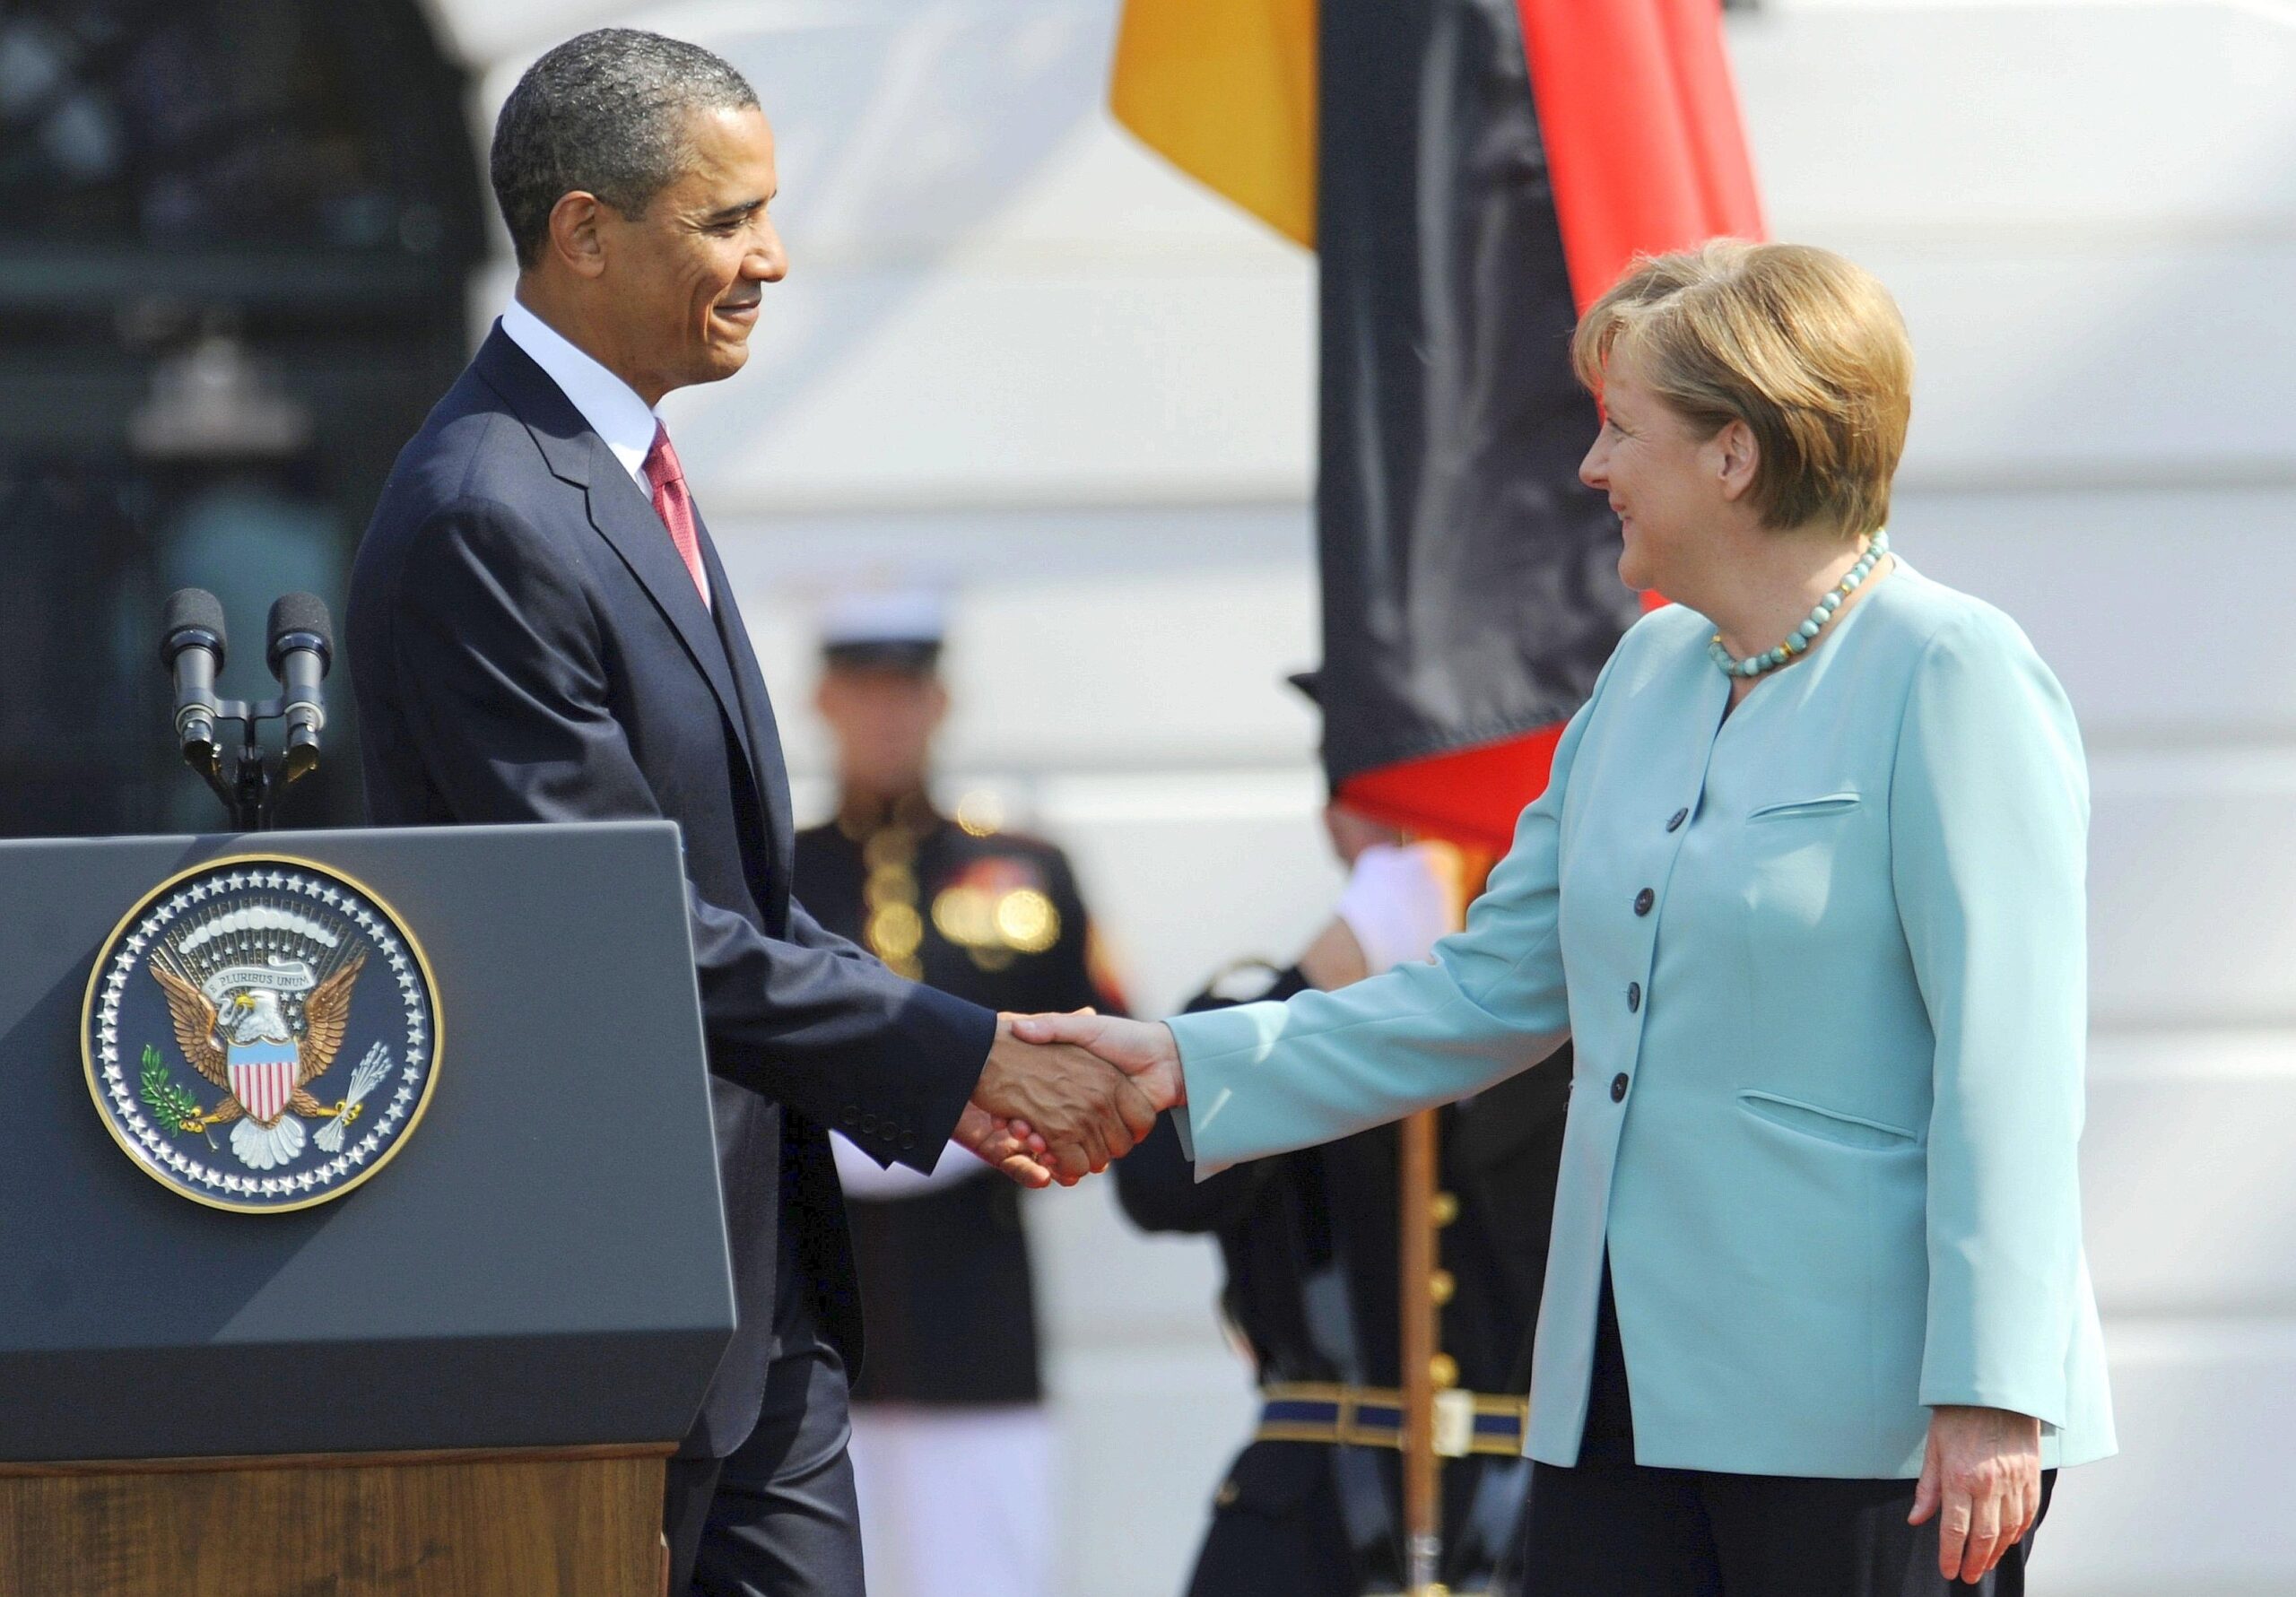 Obama erklärte bei der Zeremonie, es sei für ihn und seine Frau sowie für das amerikanische Volk eine große Ehre, die Kanzlerin wieder in den USA begrüßen zu dürfen. Merkel ...